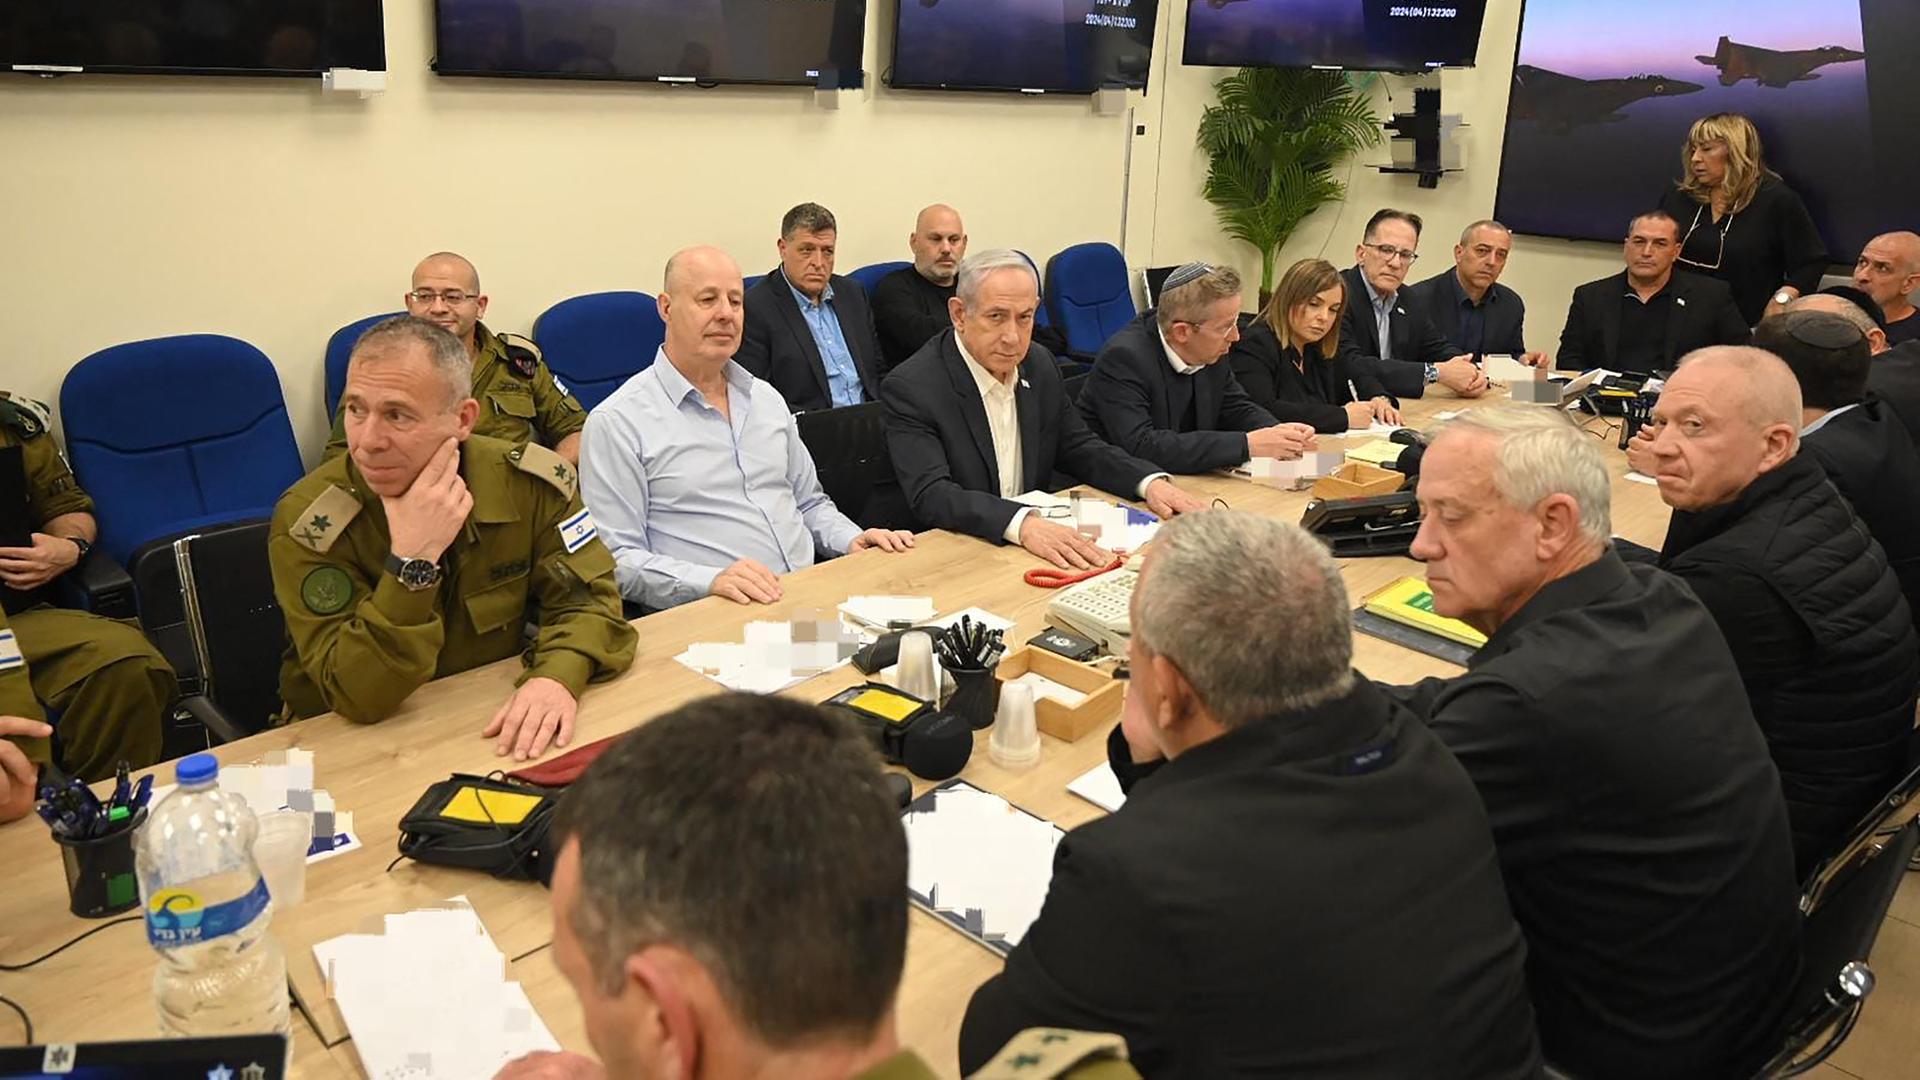 Die Regierungsmitglieder sitzen an einem rechteckigen Tisch in einem Raum.